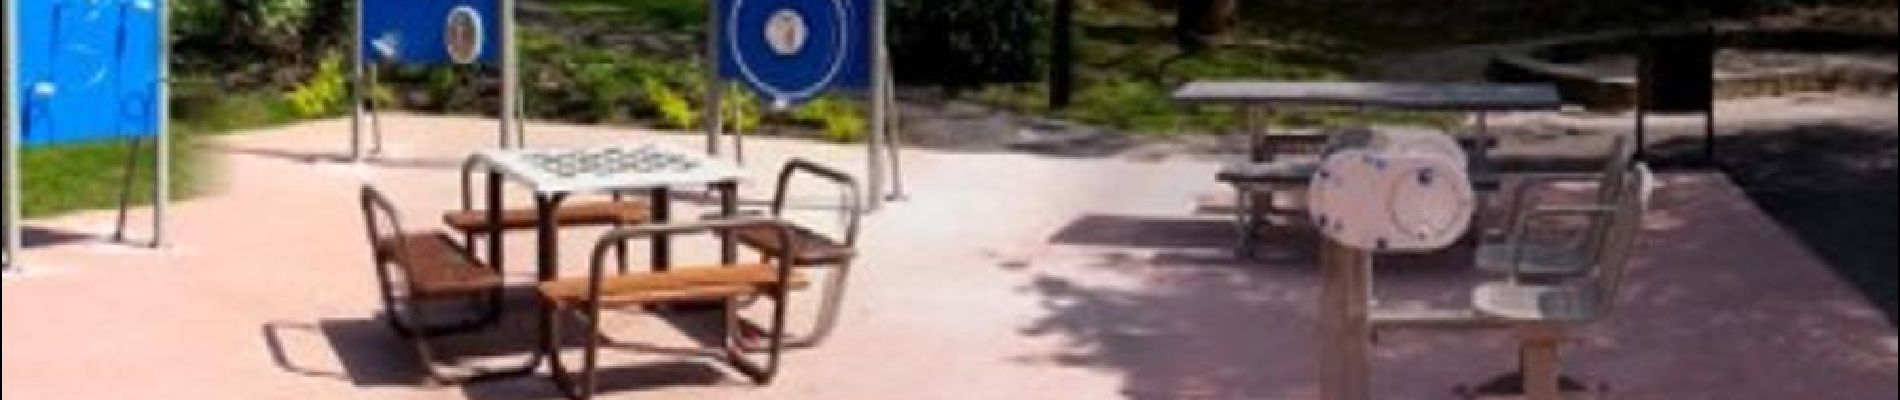 POI Andenne - Le Parc Dieudonné dédié aux Seniors et à la détente - Photo